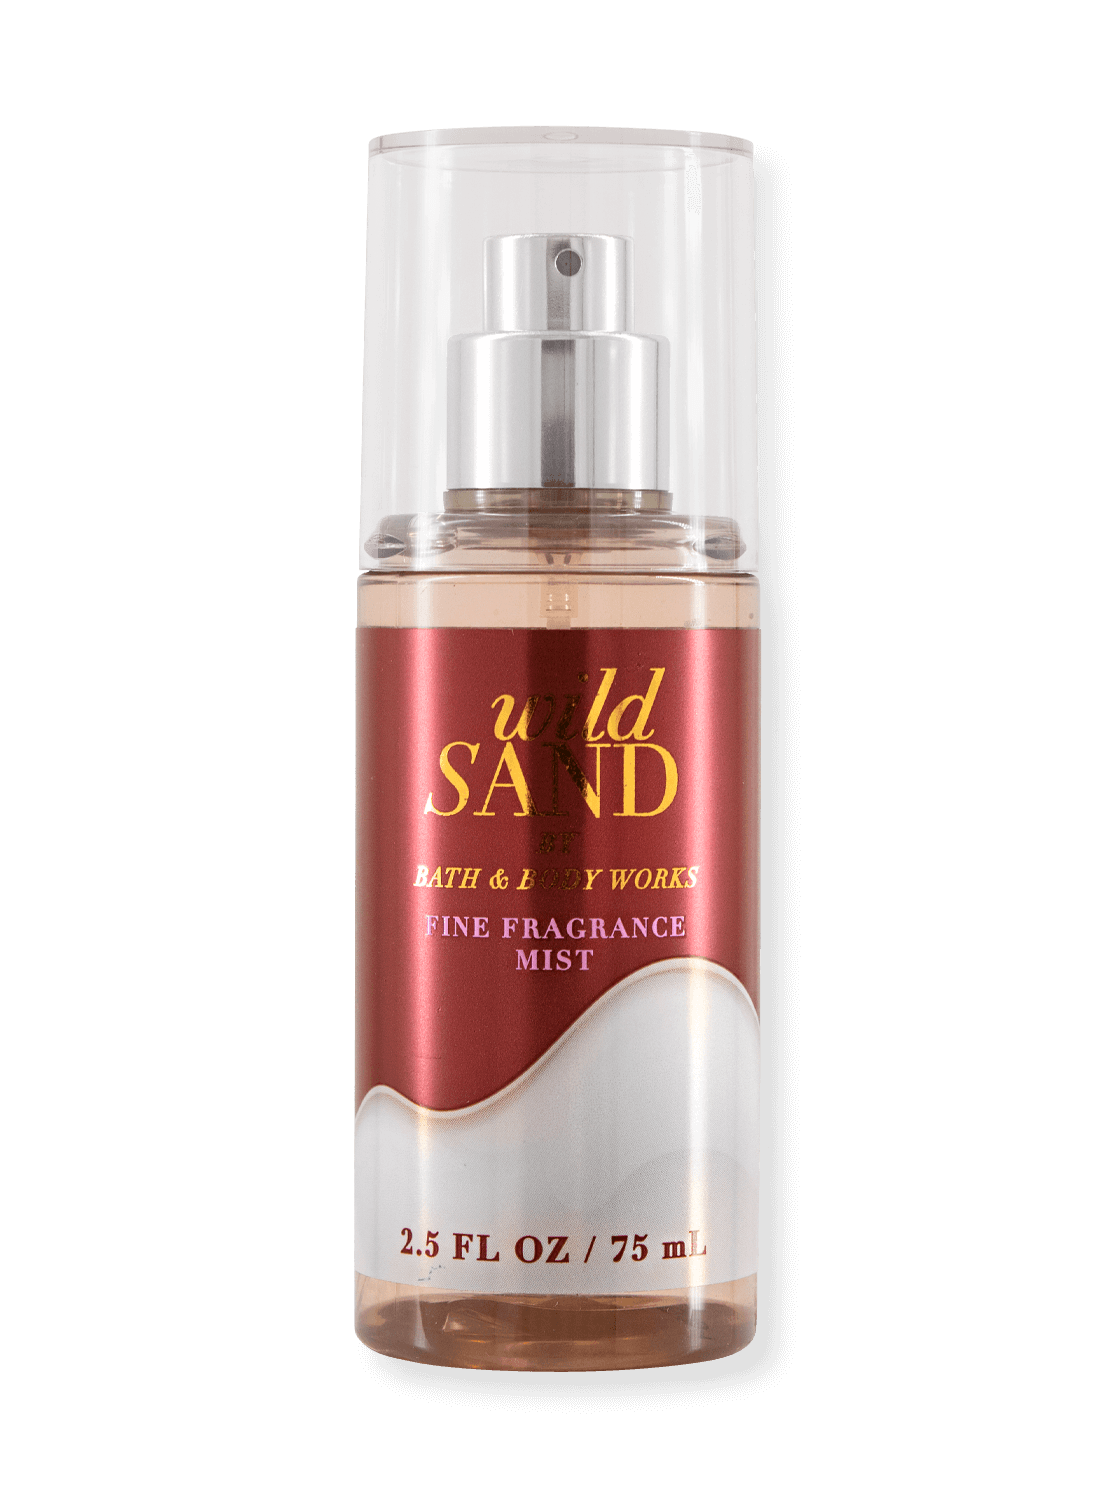 Body Spray - Wild Sand (Travel Size) - 75ml